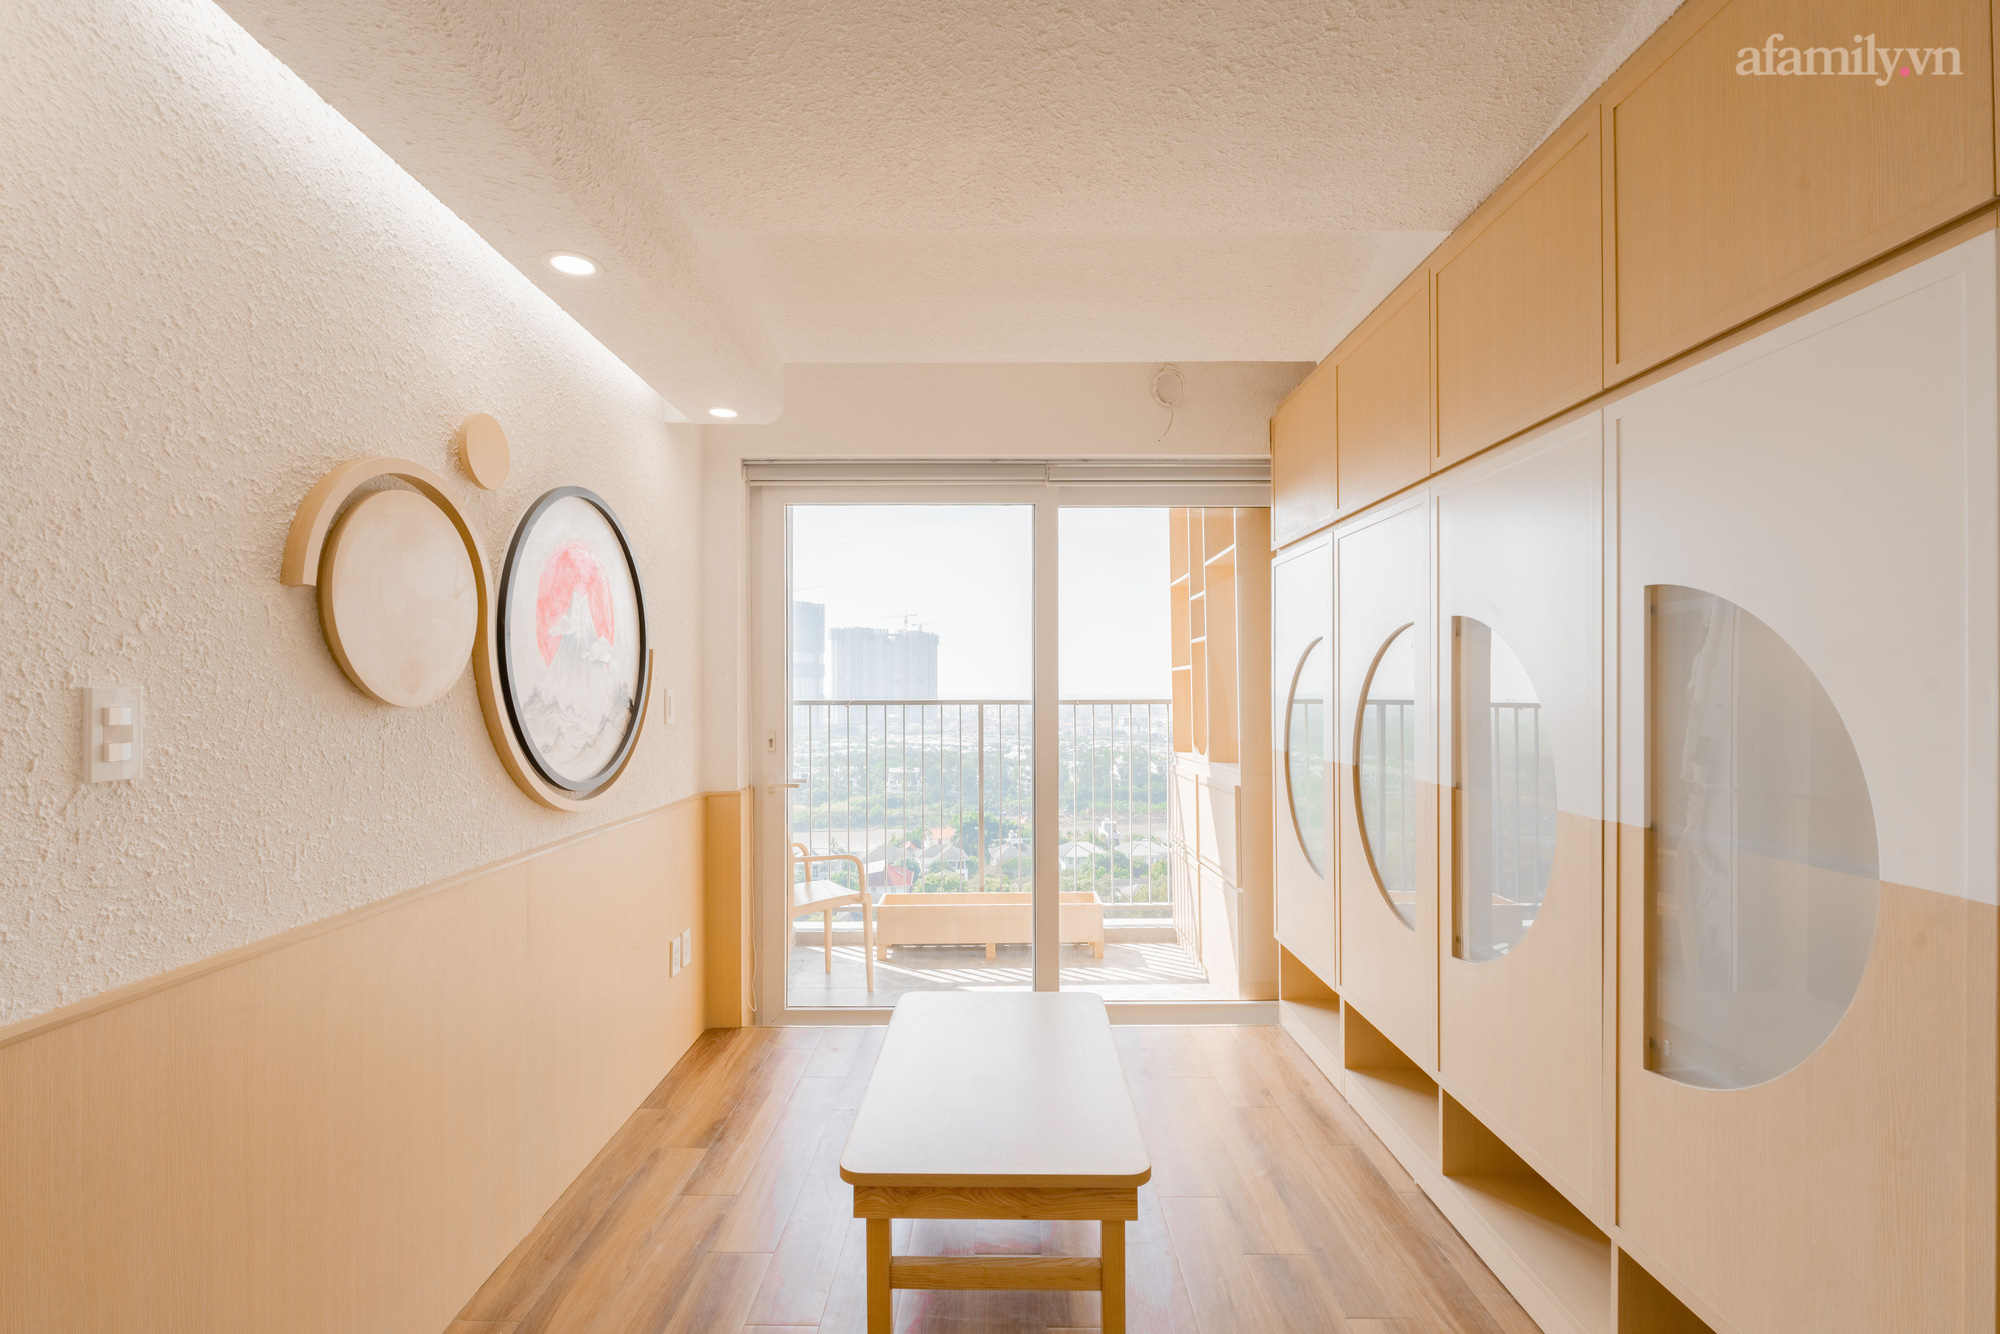 Căn hộ 92m² hiện đại ở Hà Nội với thiết kế tường bo tròn đặc biệt thu hút, gia chủ tiết lộ chi phí hết 1,5 tỷ - Ảnh 3.